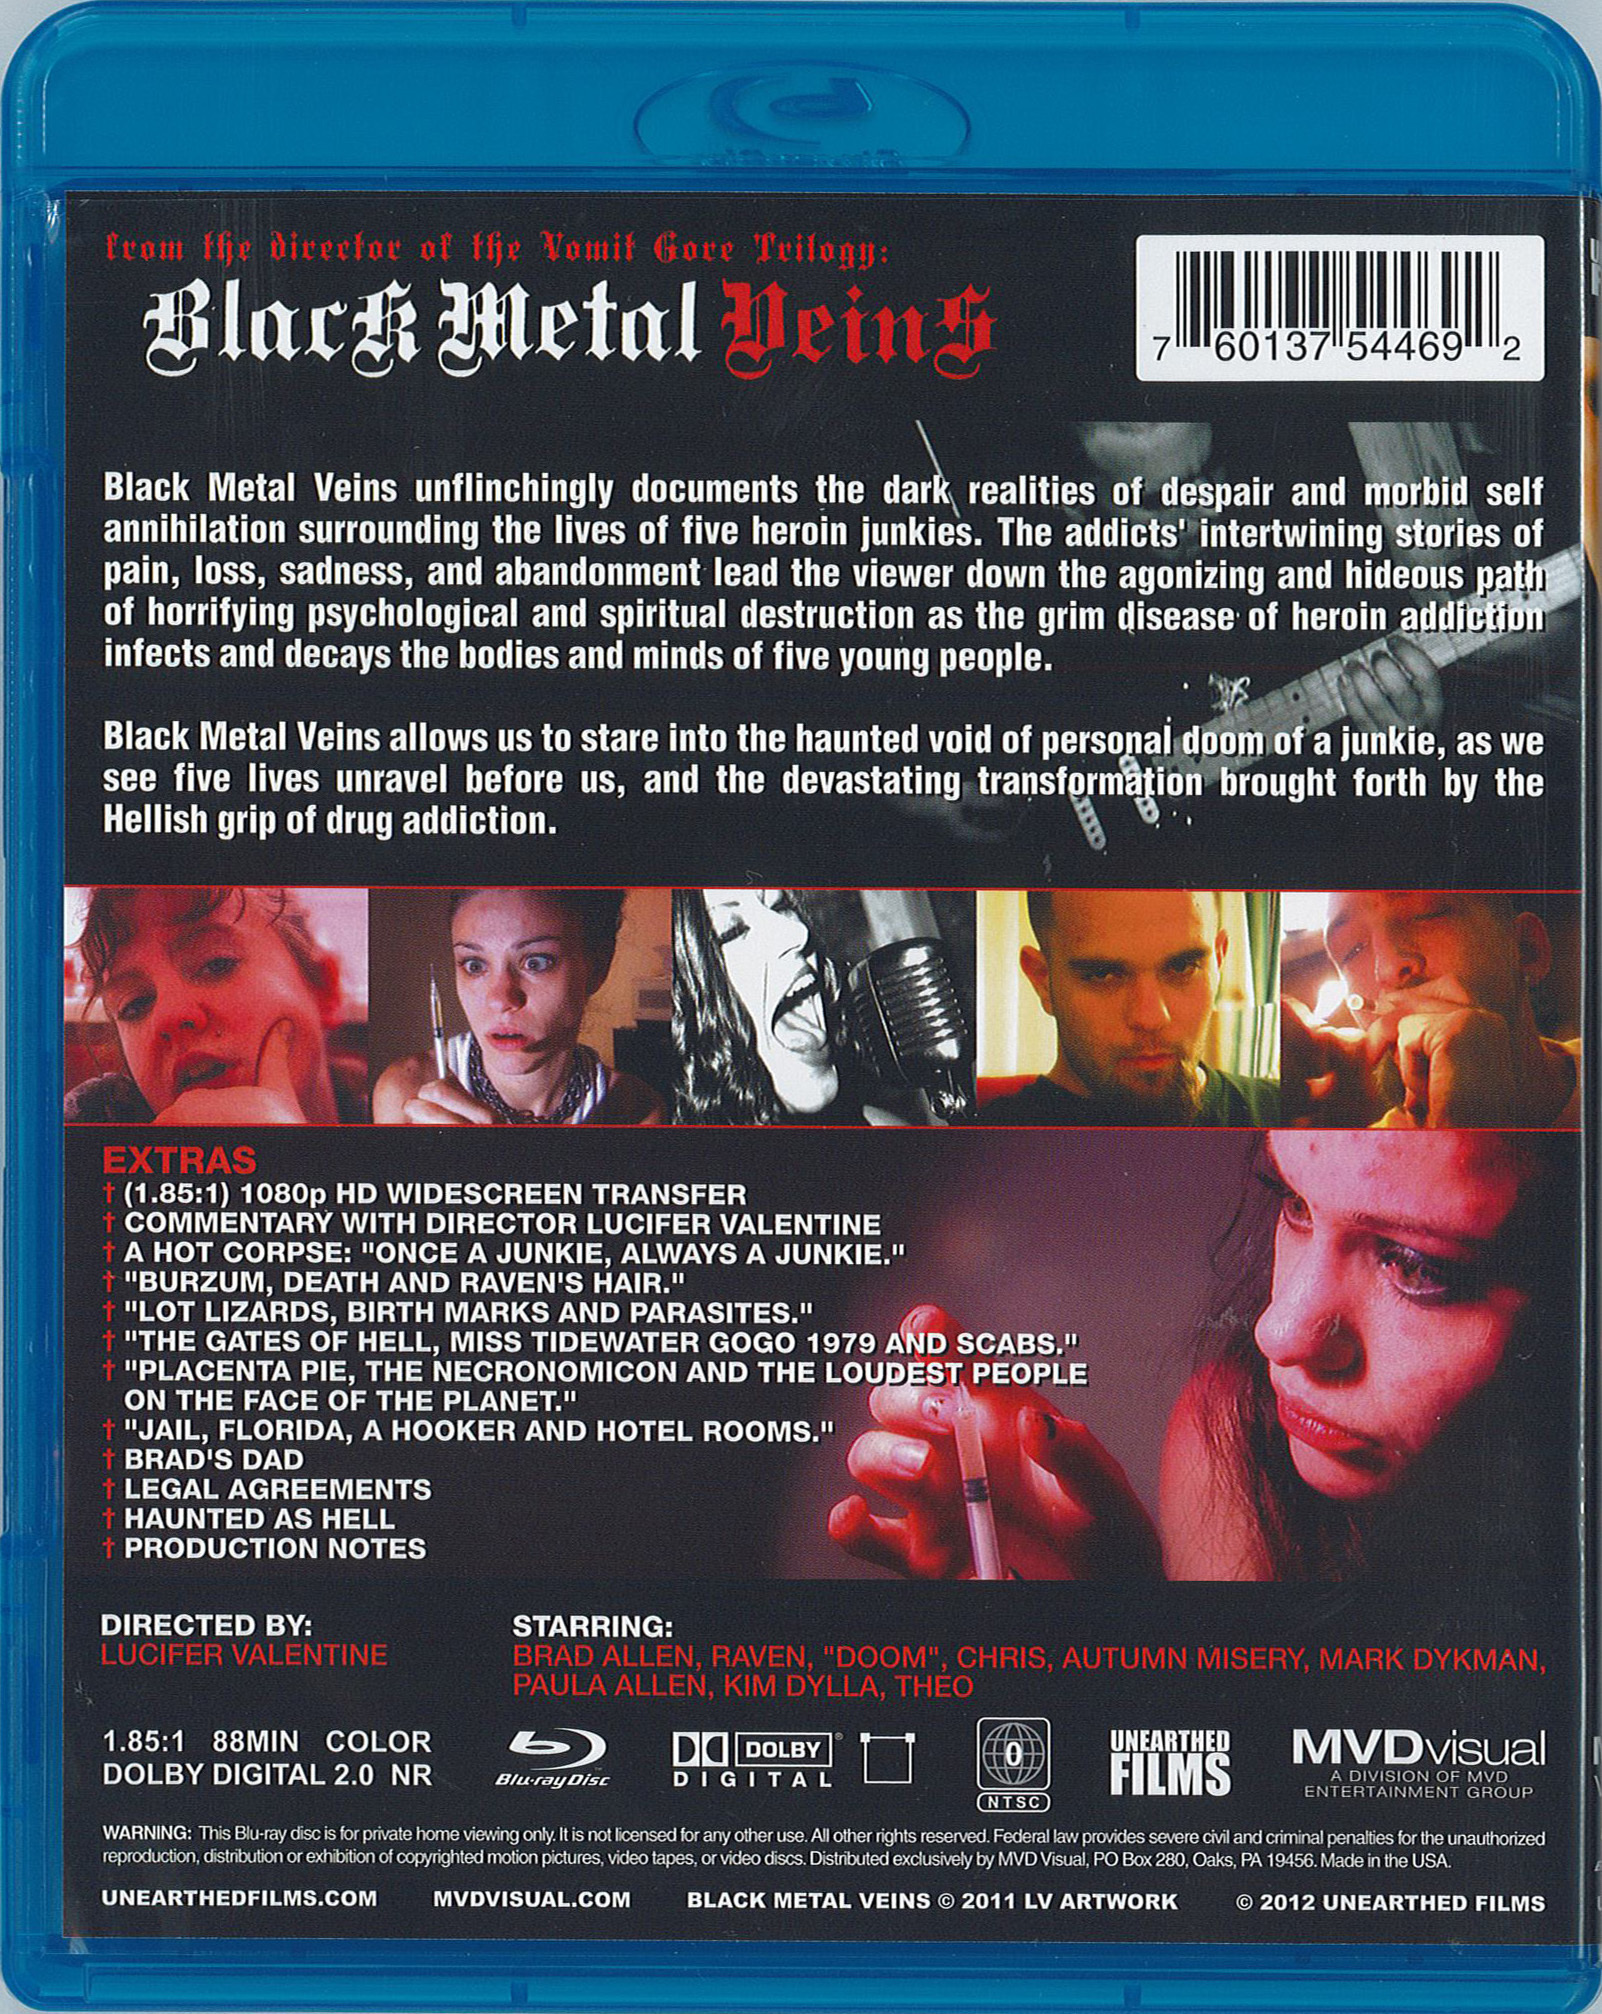 Black Metal Veins Blu-ray